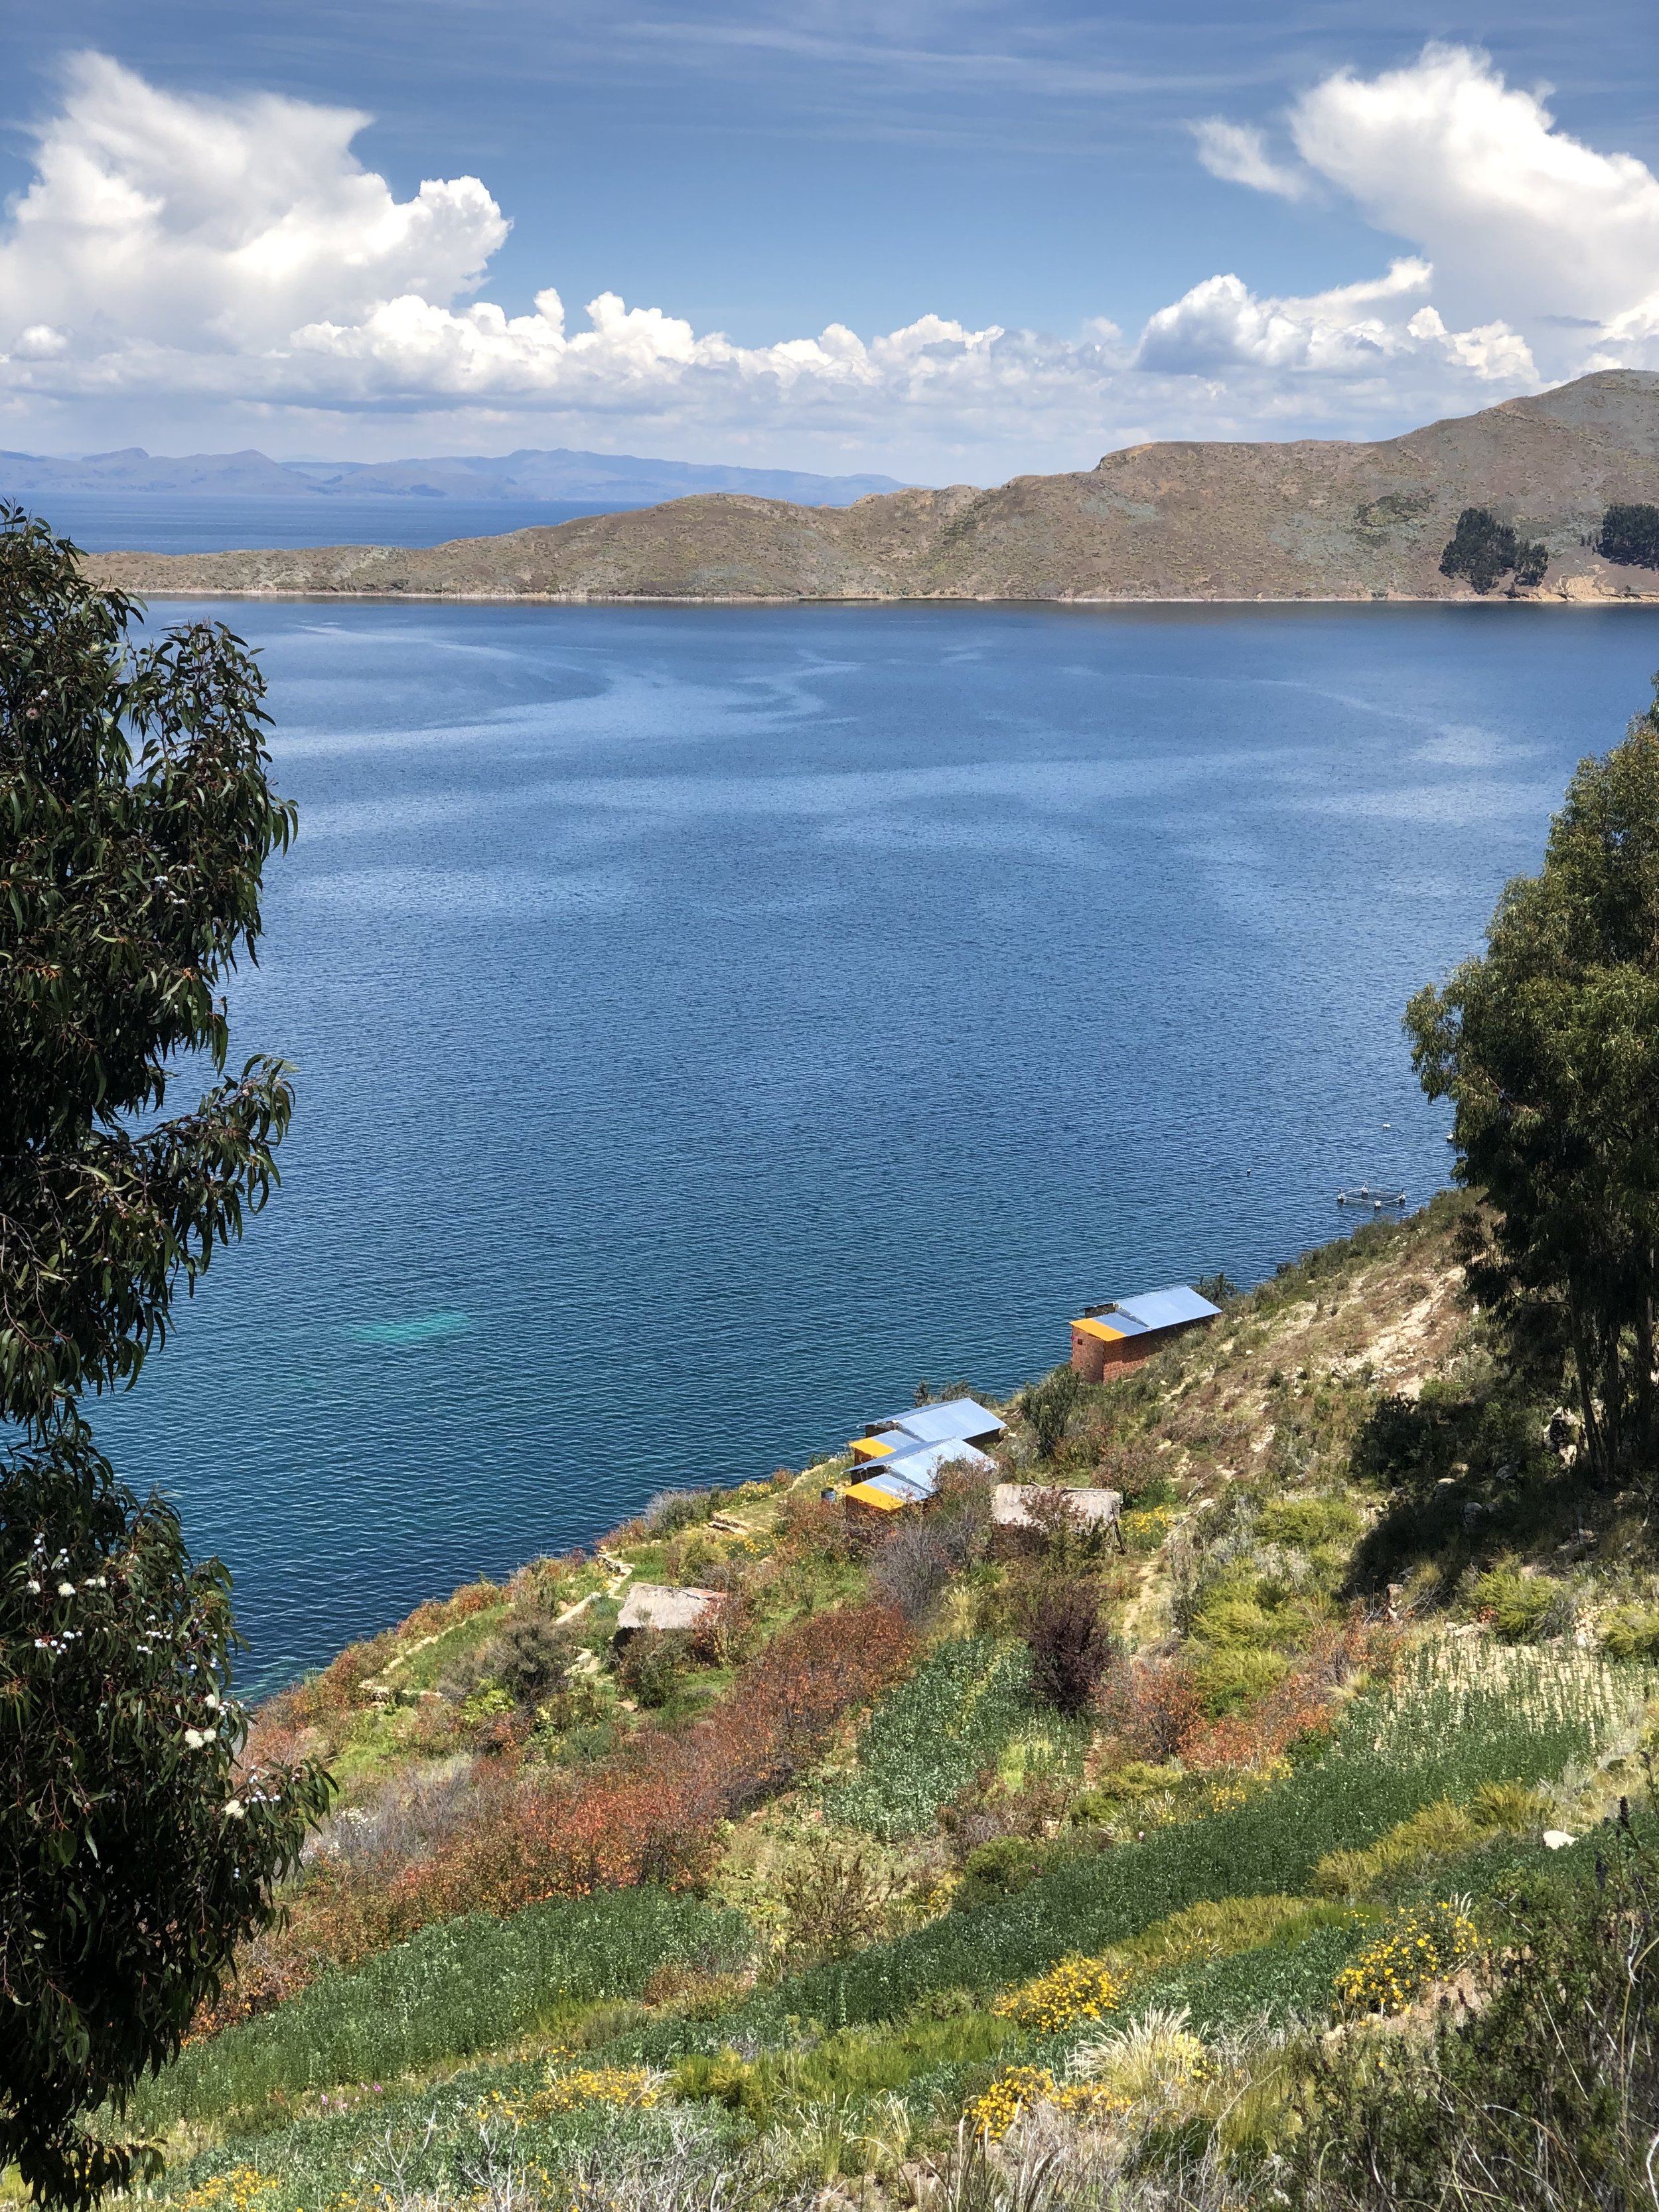 isla-del-sol-lake-titicaca-bolivia-travel-4